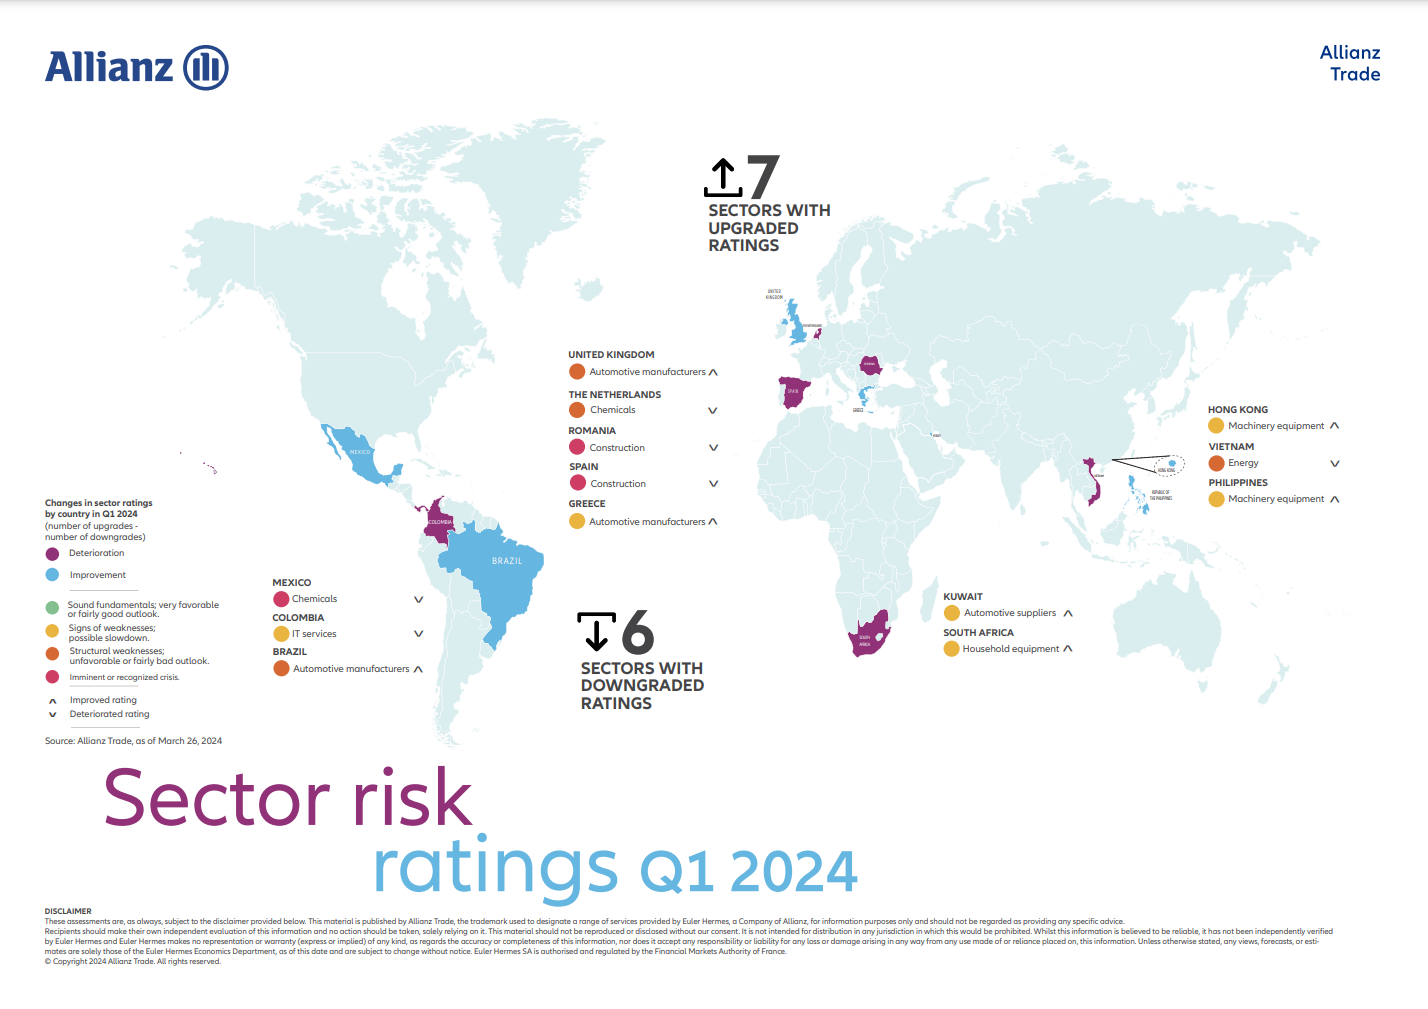 carte risque sectoriel T2 2022